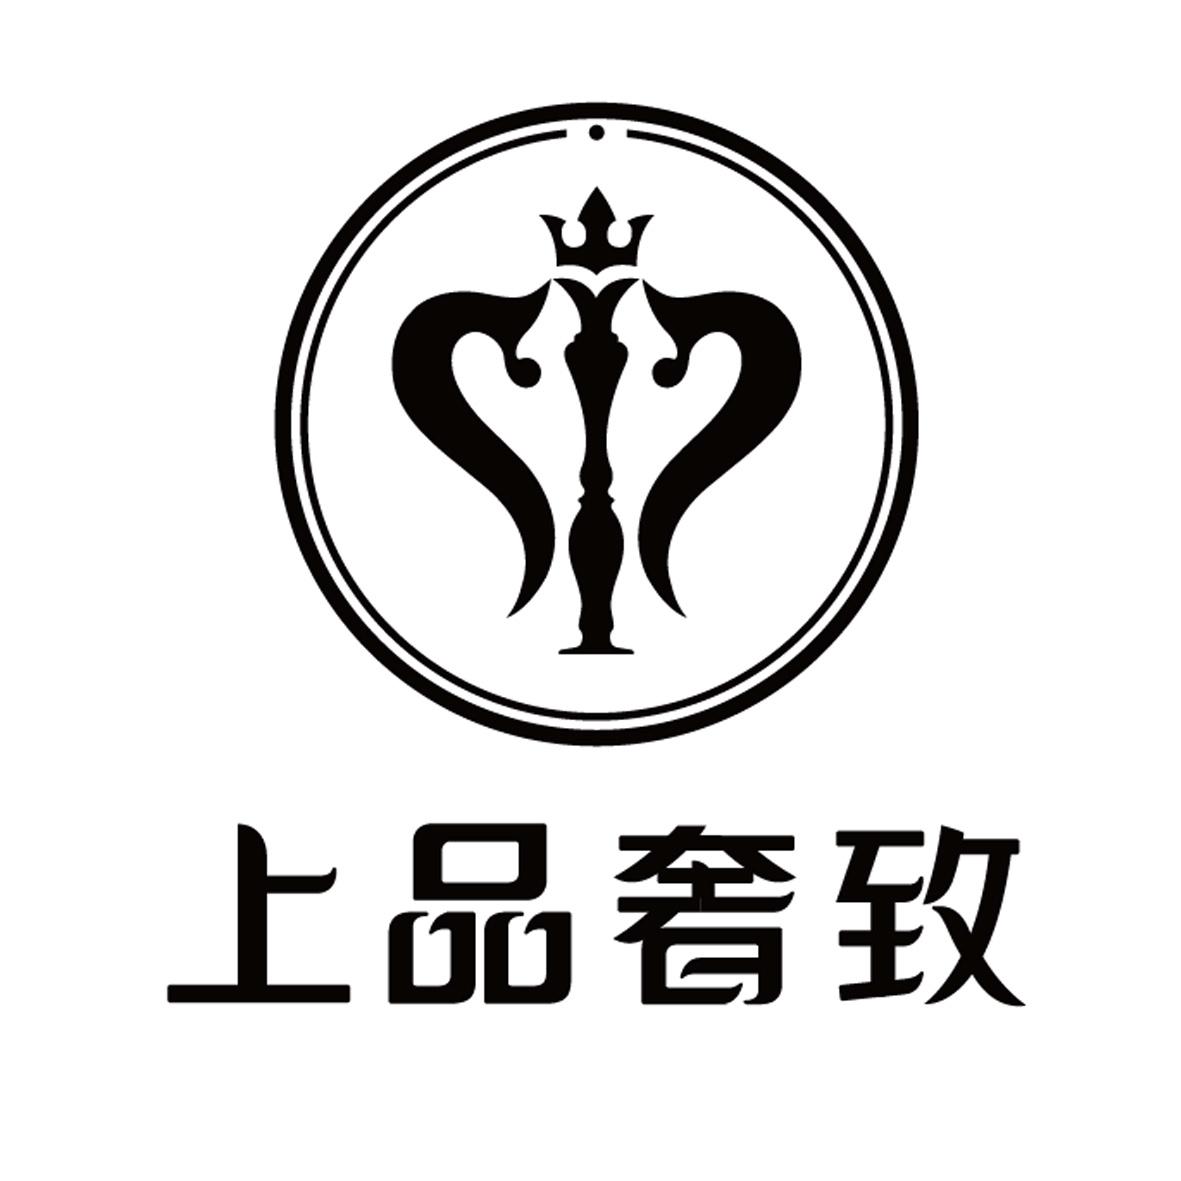 logo 奢侈 中文图片